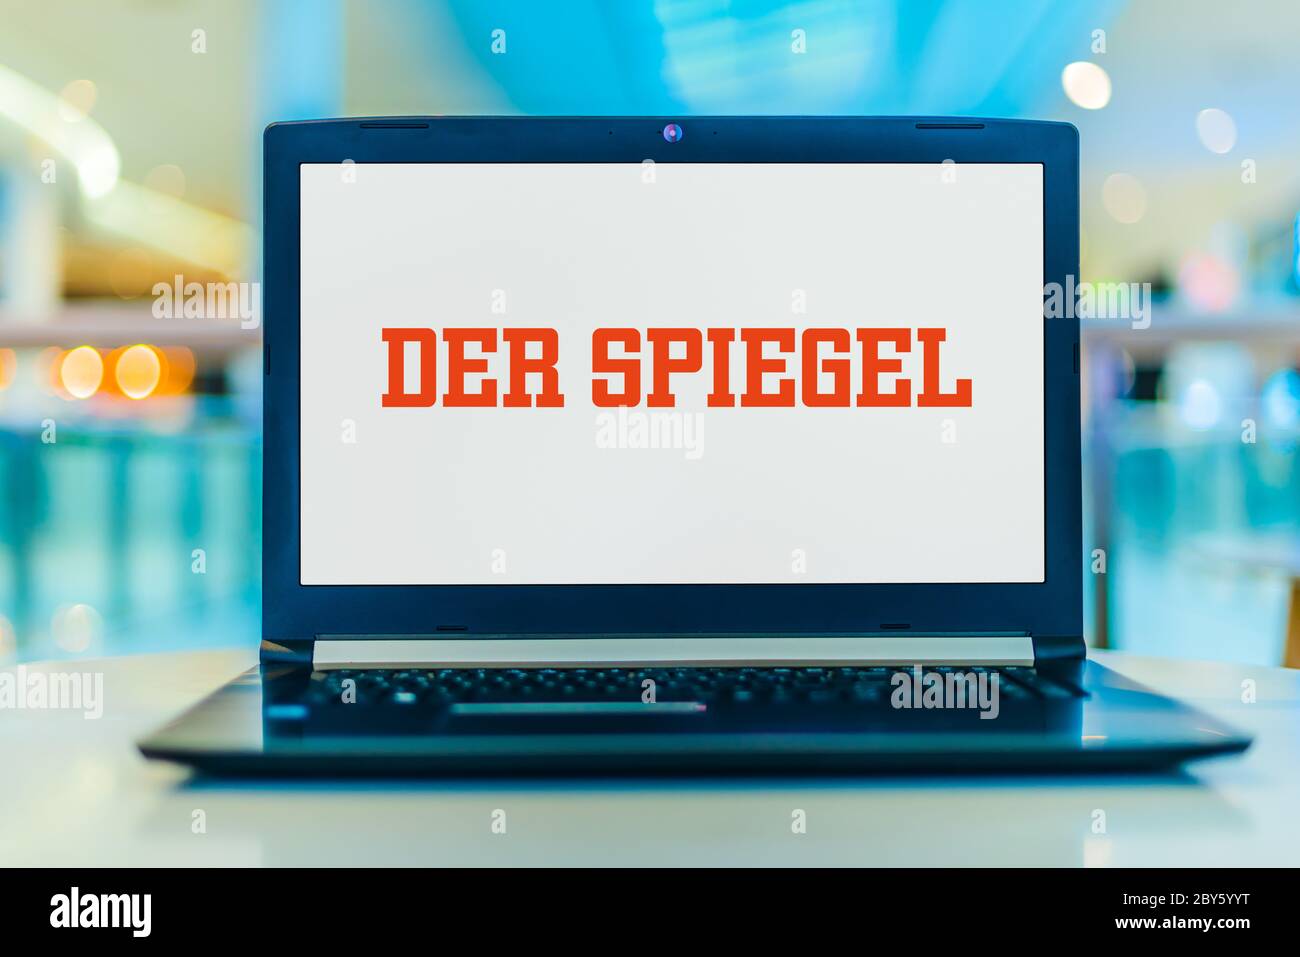 POZNAN, POL - 14 DE FEBRERO de 2020: Ordenador portátil mostrando el logotipo de der Spiegel, una revista de noticias alemana de centro izquierda publicada en Hamburgo Foto de stock